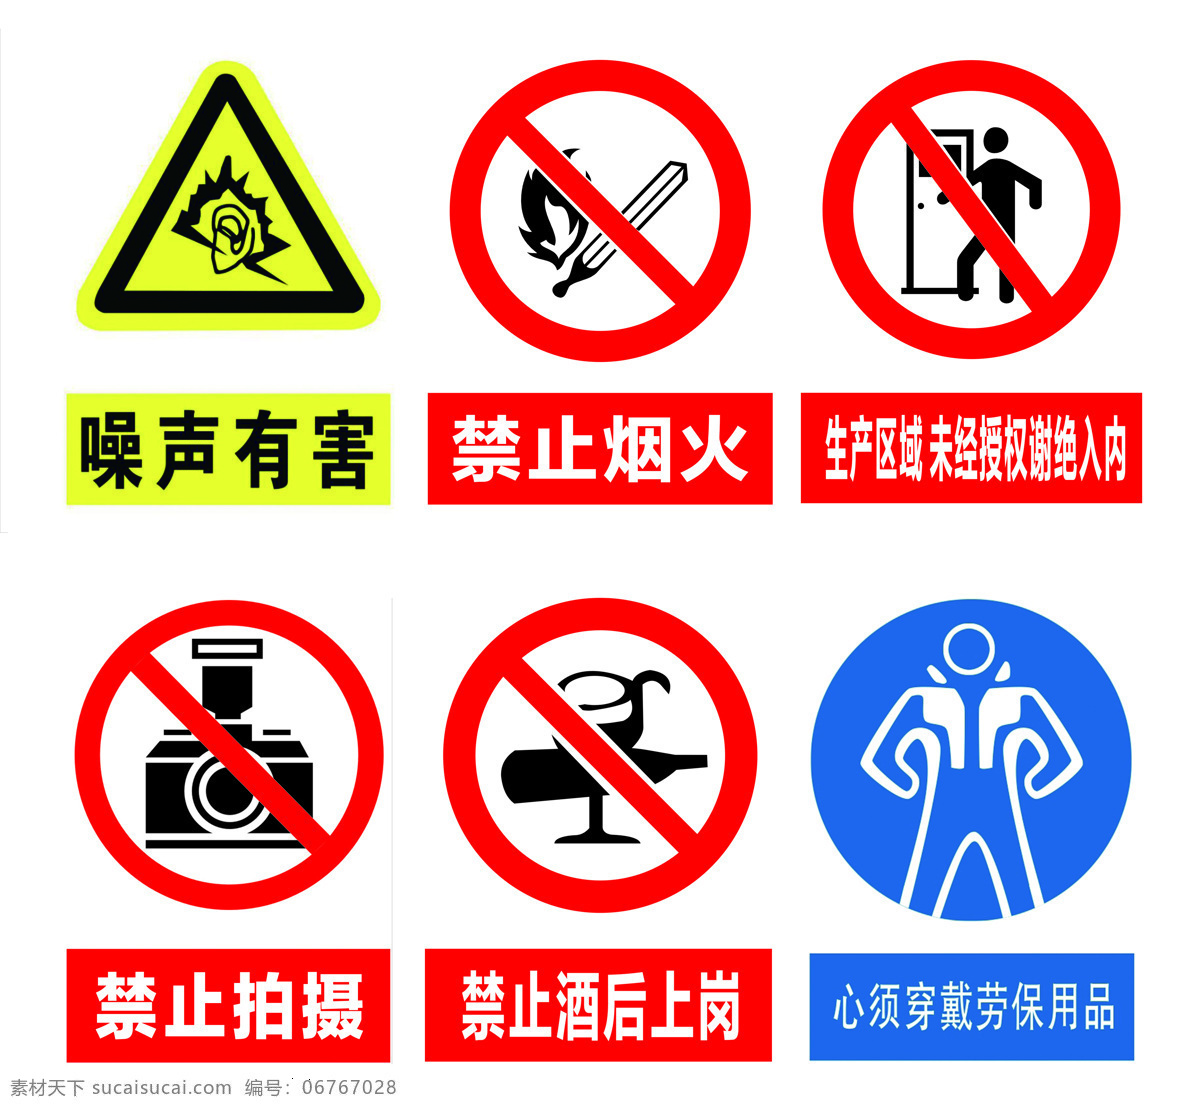 车间 门口 警示 标识 噪声有害 禁止烟火 禁止酒后上岗 禁止拍摄 必须穿戴用品 标志图标 公共标识标志